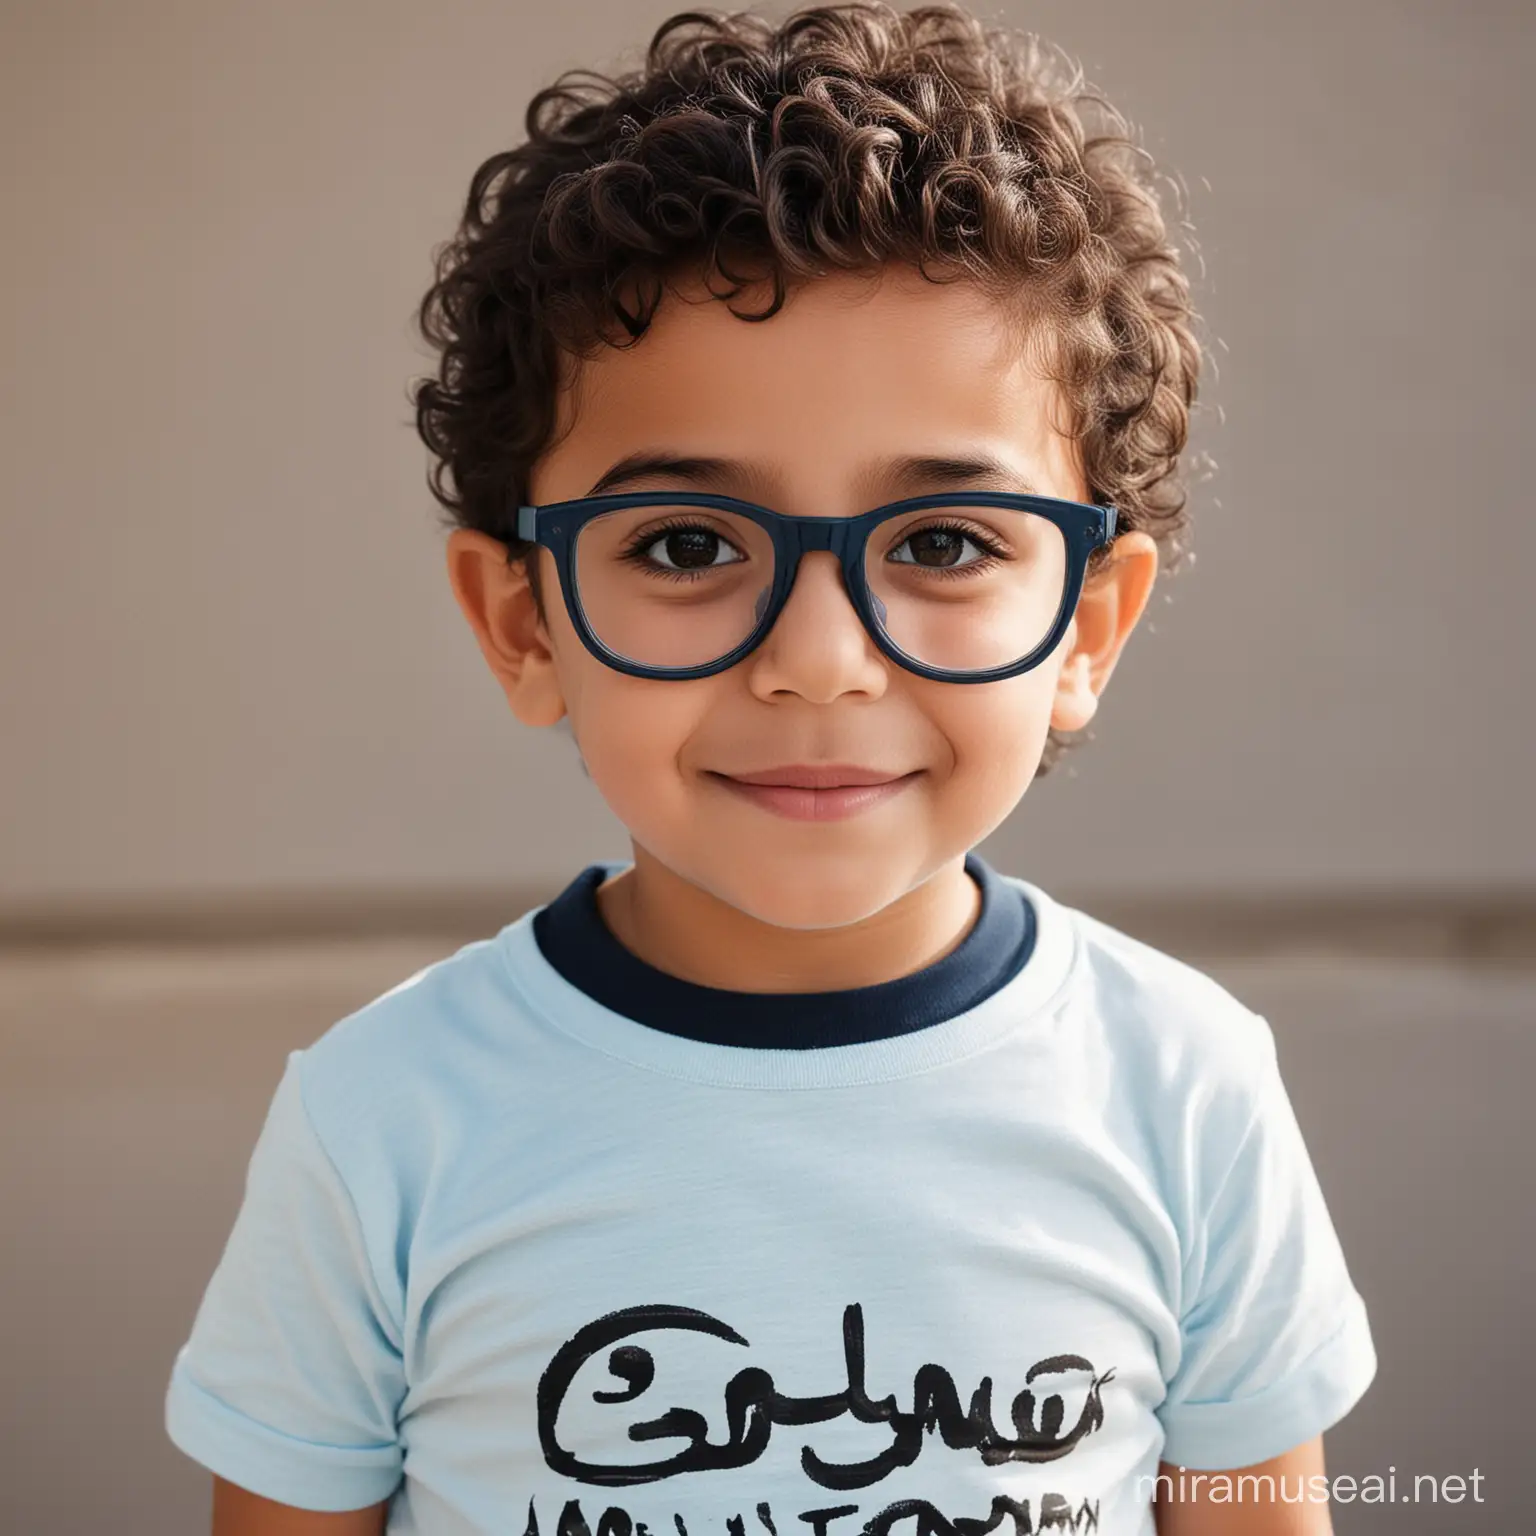 طفل ولد بملامح عربية يرتدي تيشيرت سماوي و نظارة للعيون بعمر ٣ سنوات


